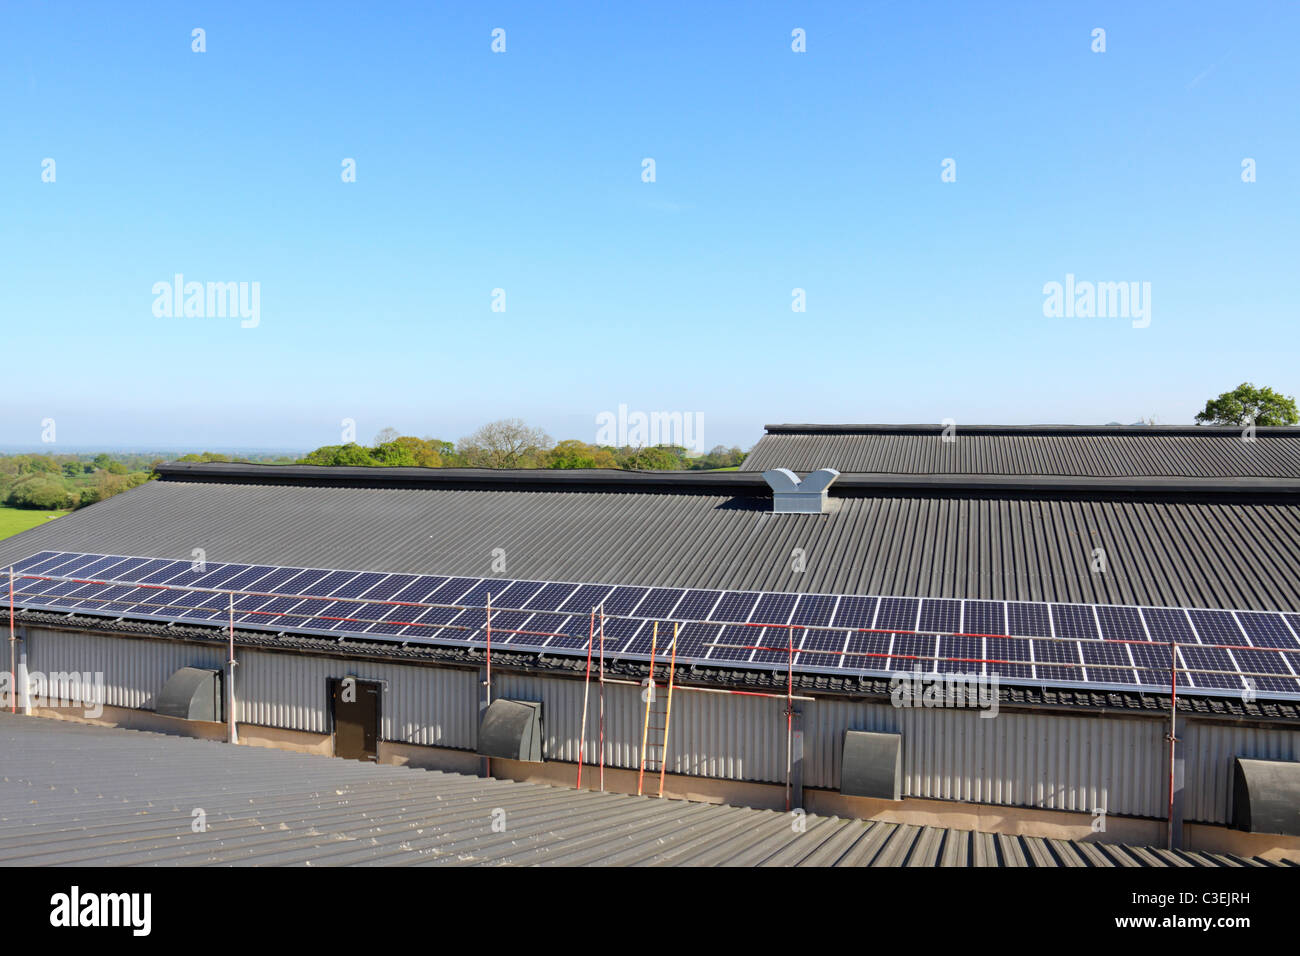 Une partie de 50kWp solar installation photovoltaïque sur le toit d'un hangar de la volaille dans le Shropshire, Angleterre Banque D'Images